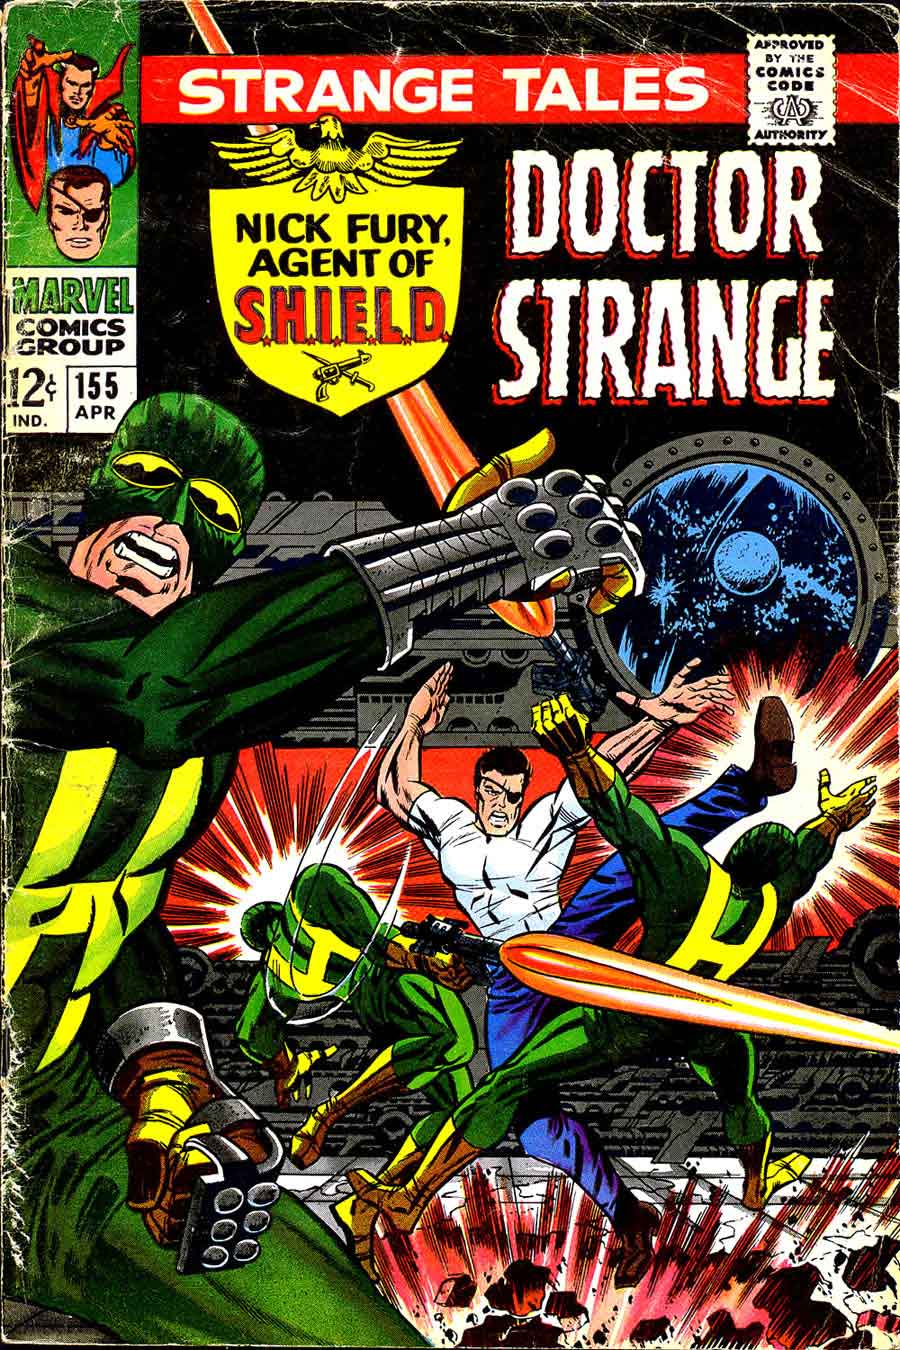 Strange Tales v1 #155 nick fury shield comic book cover art by Jim Steranko